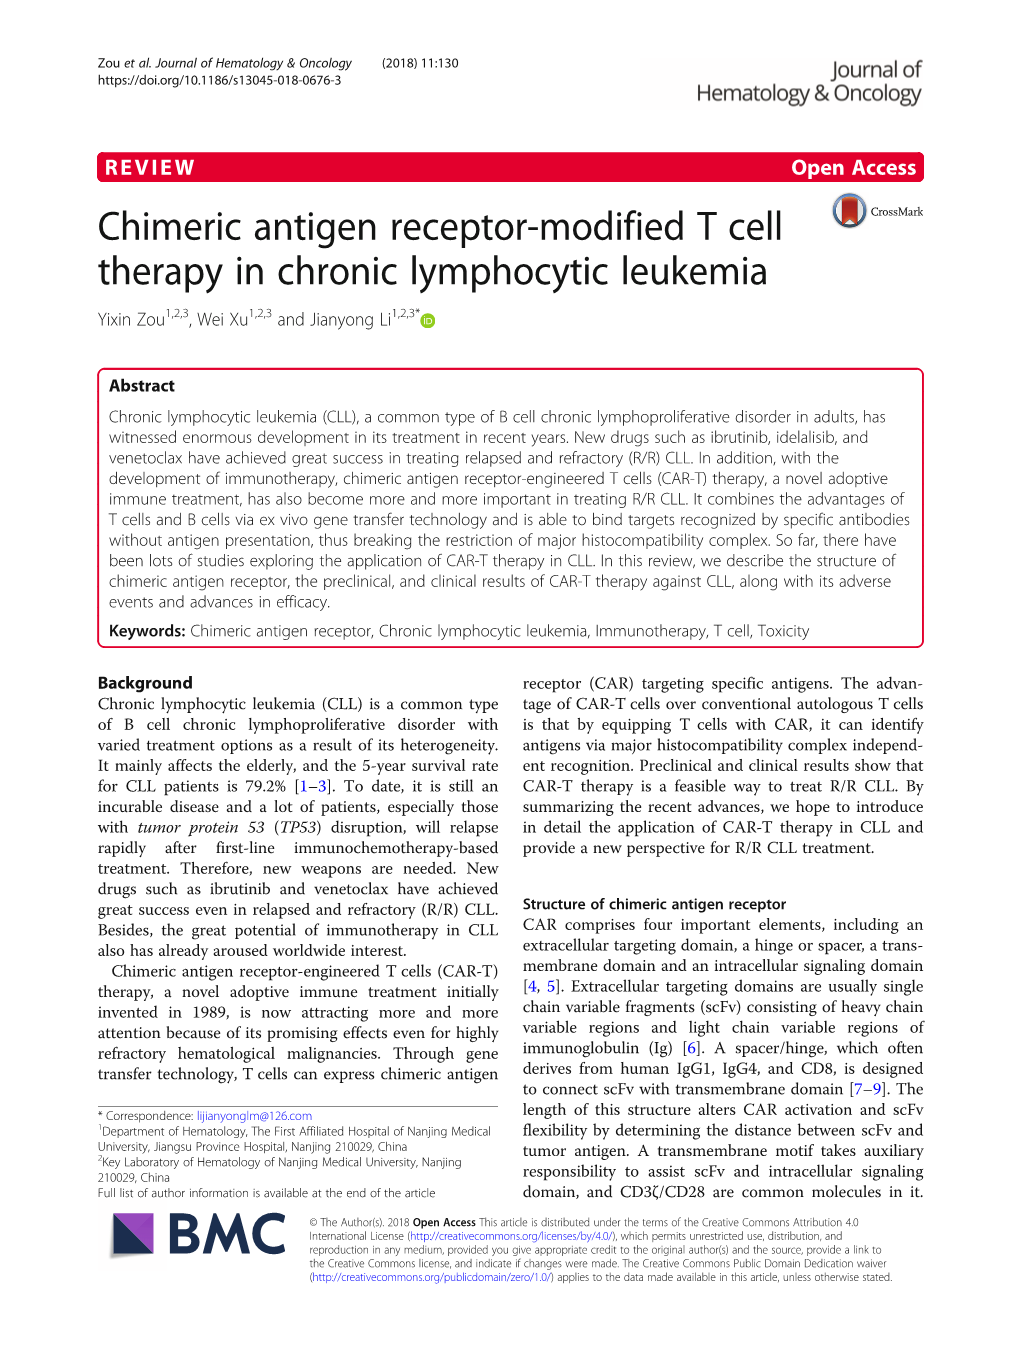 Chimeric Antigen Receptor-Modified T Cell Therapy in Chronic Lymphocytic Leukemia Yixin Zou1,2,3, Wei Xu1,2,3 and Jianyong Li1,2,3*